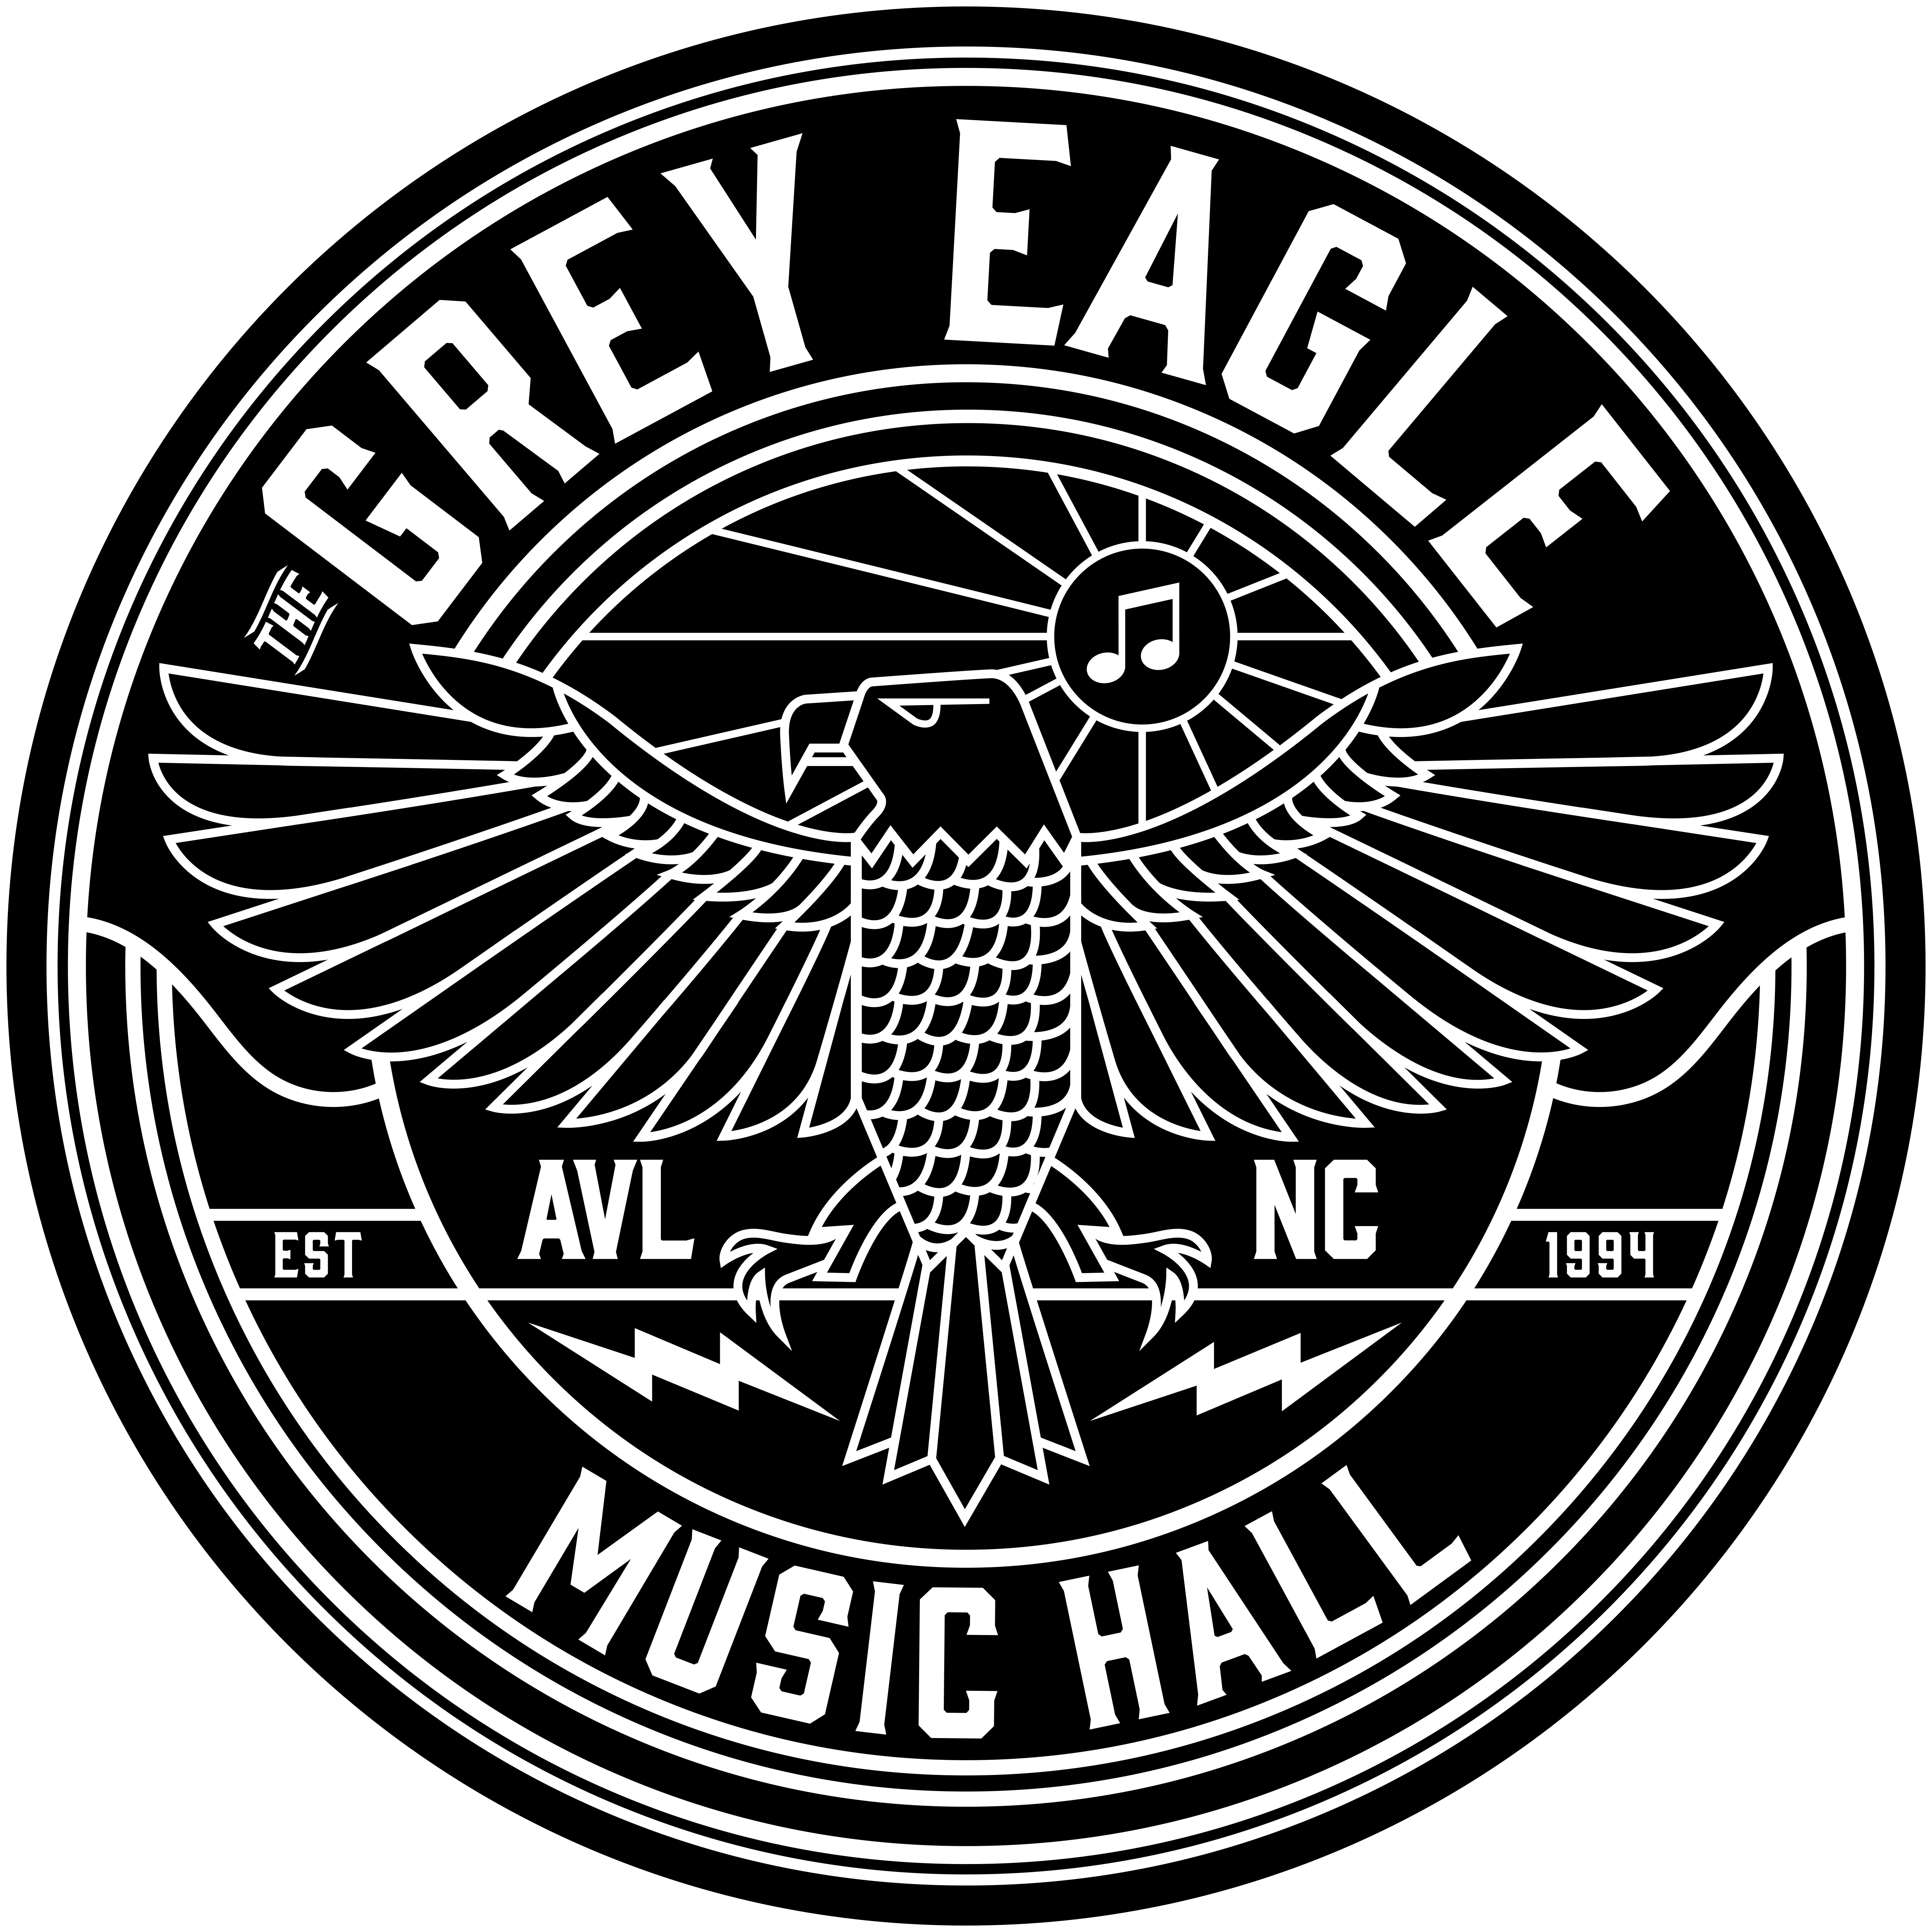 The Grey Eagle Announces Plans to Reopen Thursday, April 1st